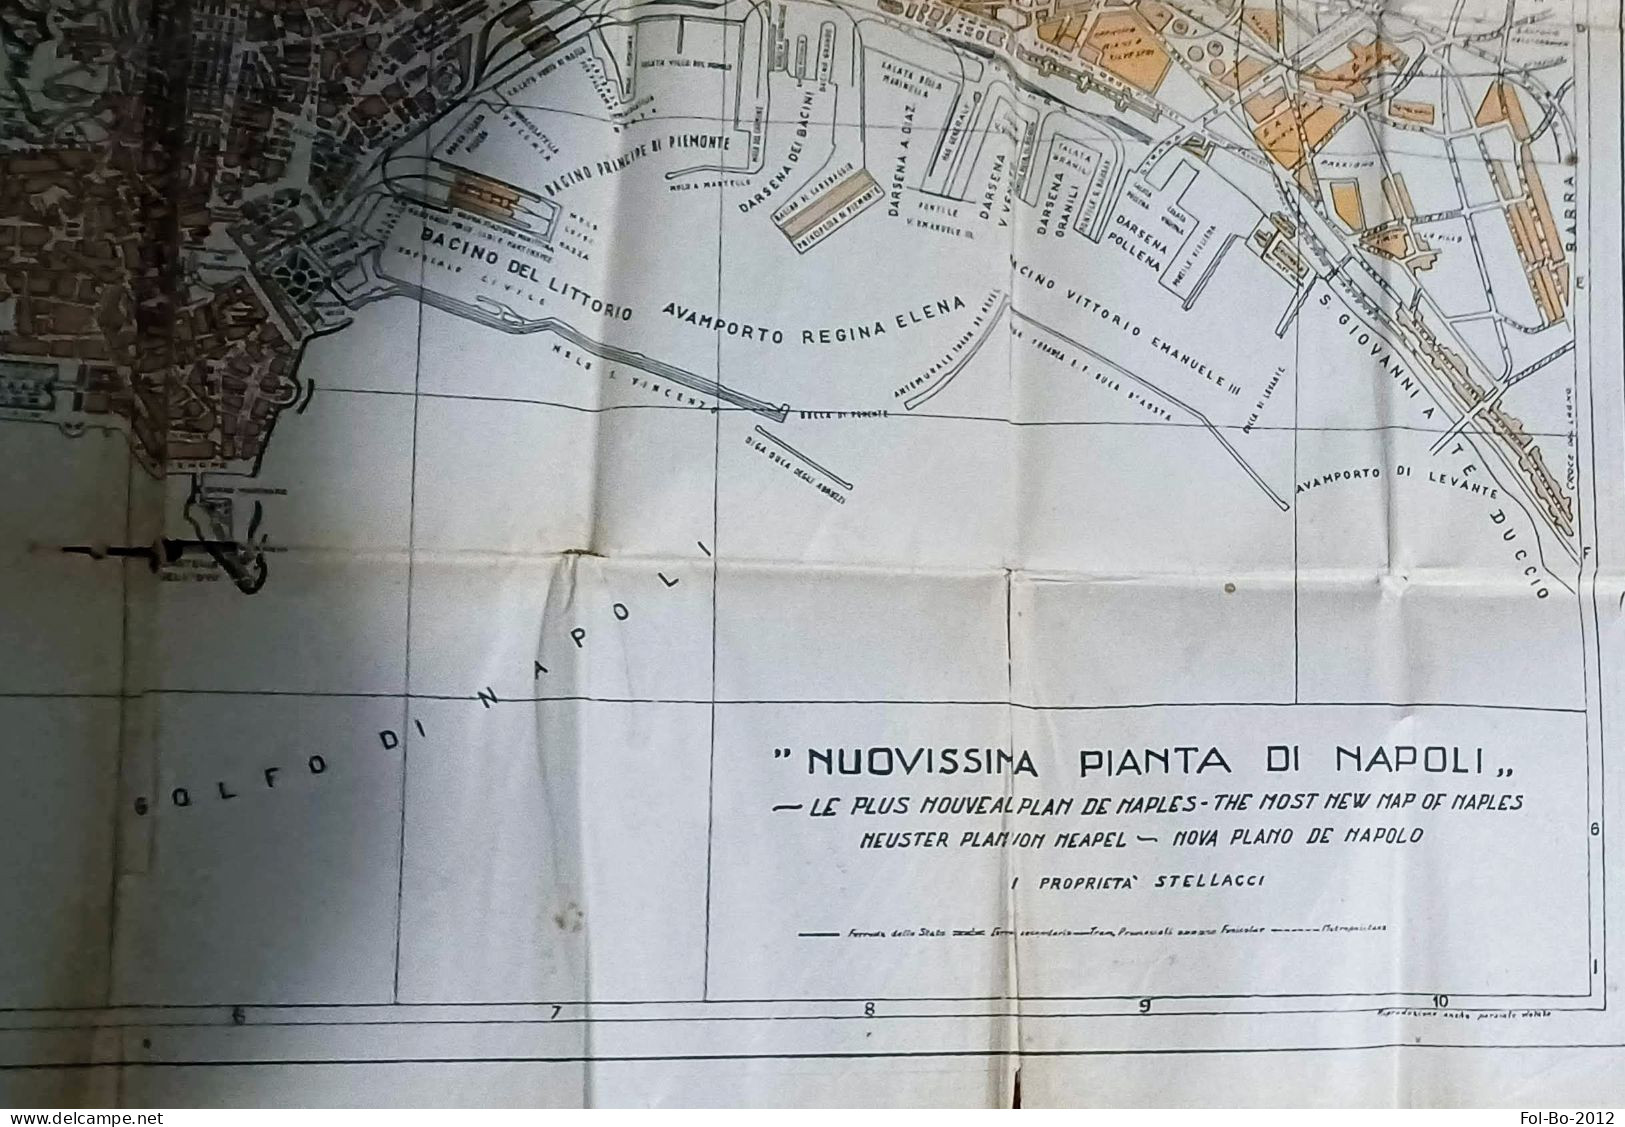 Napoli tascabile guida illustrata e dintorni anni 40.50